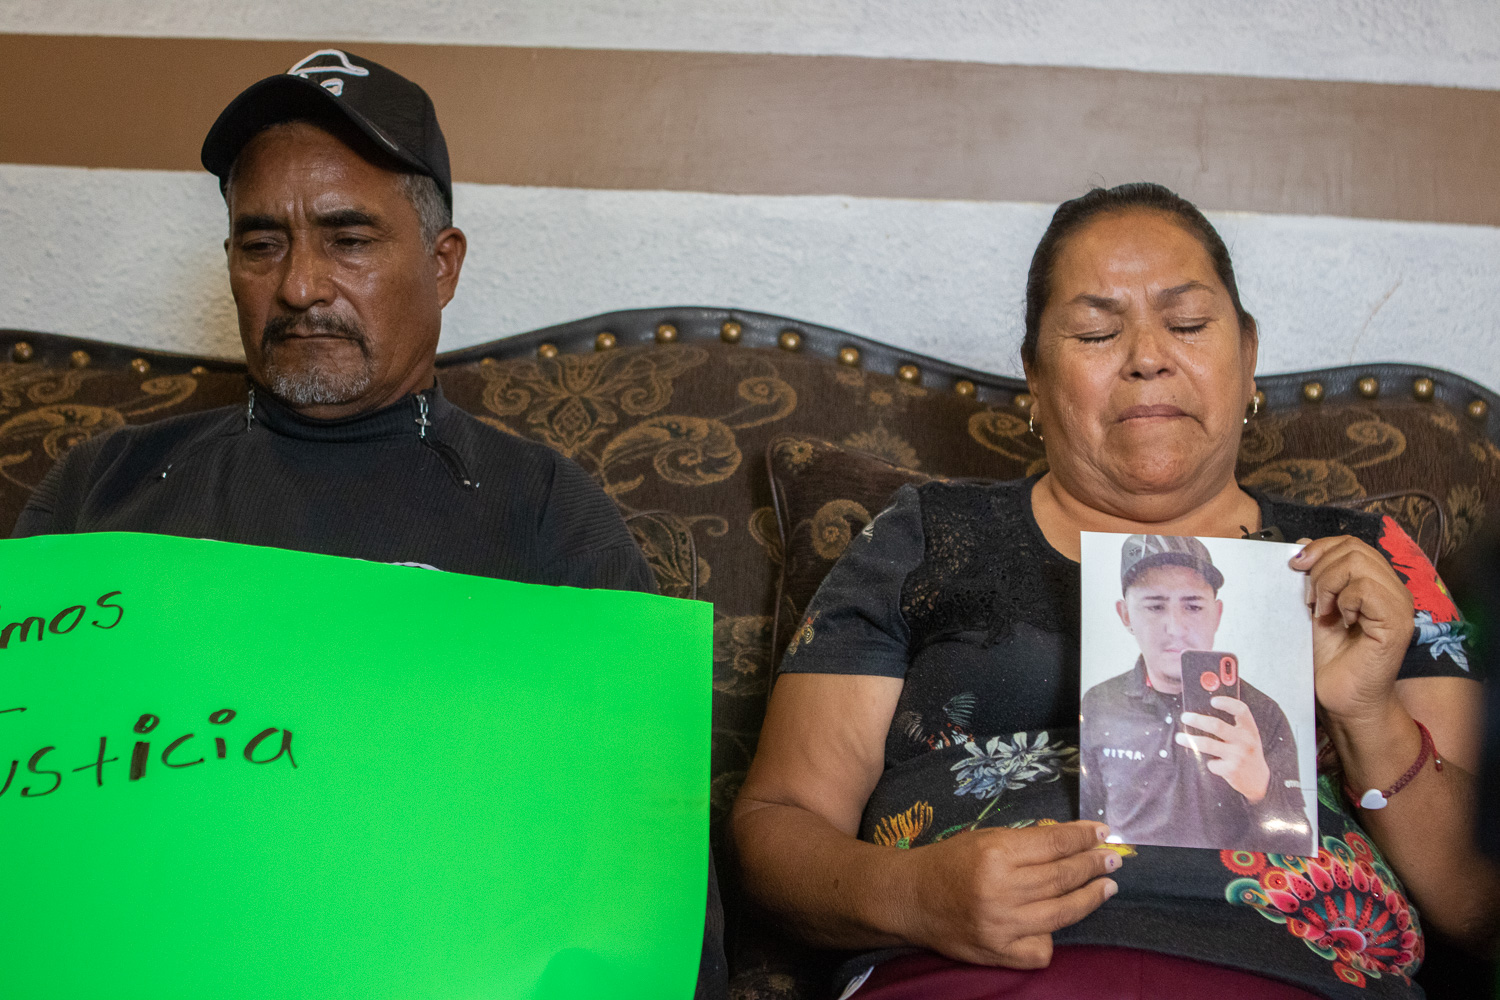  Families of migrants shot in Sierra Blanca seek justice, answers 